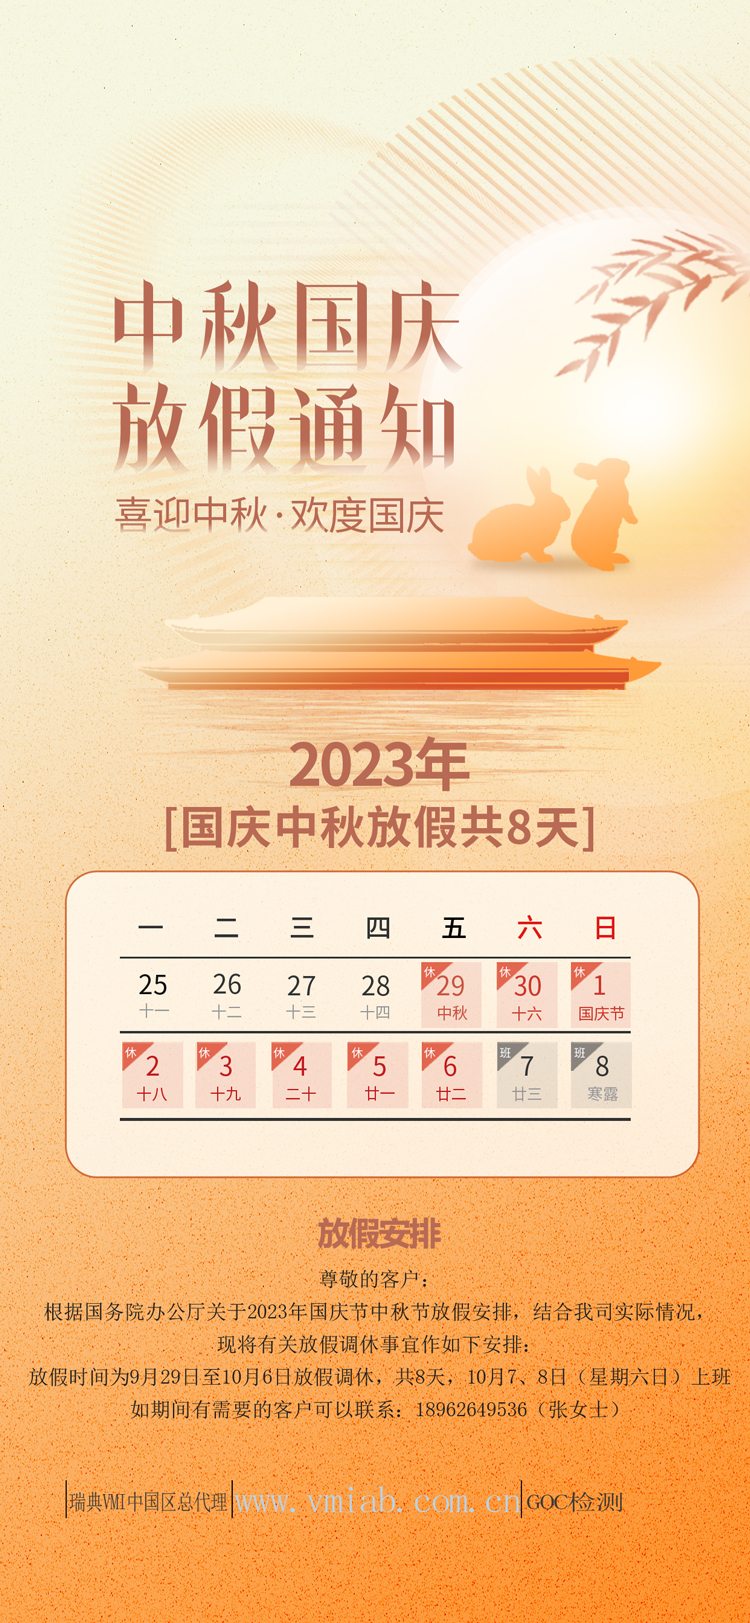 2023年GOC中秋国庆放假通知